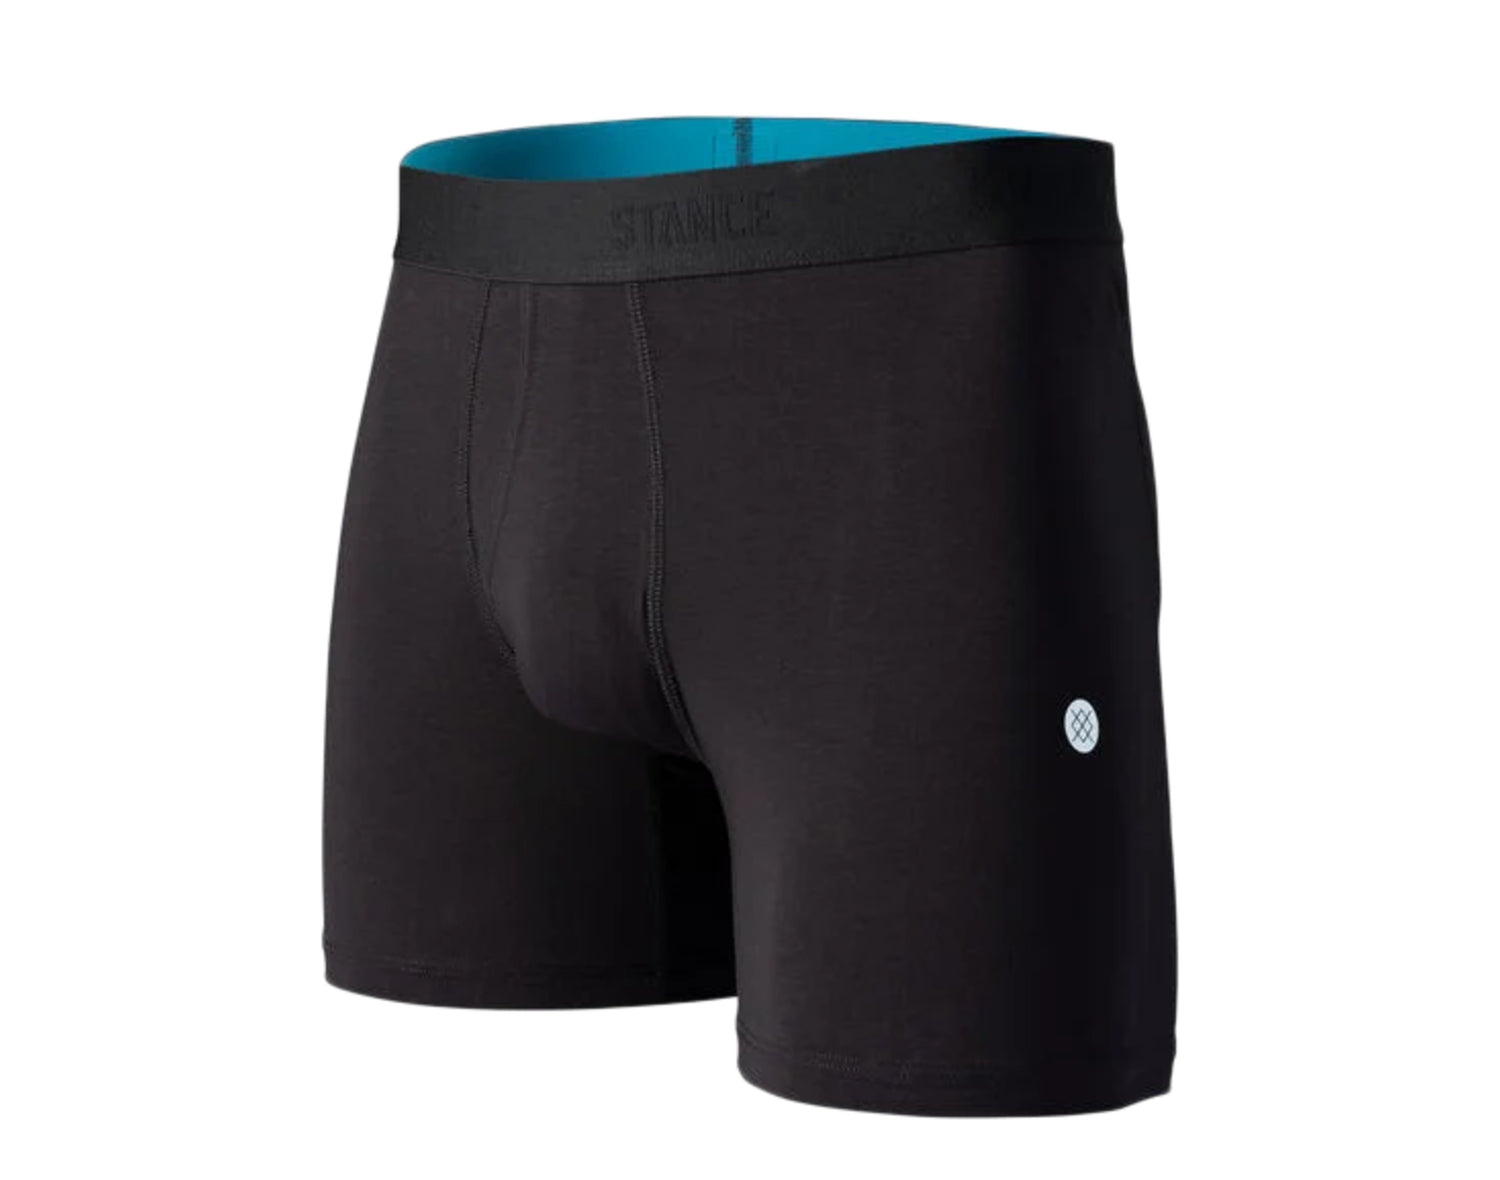 Stance Wholester OG ST 6-Inch Boxer Breifs Men's Underwear